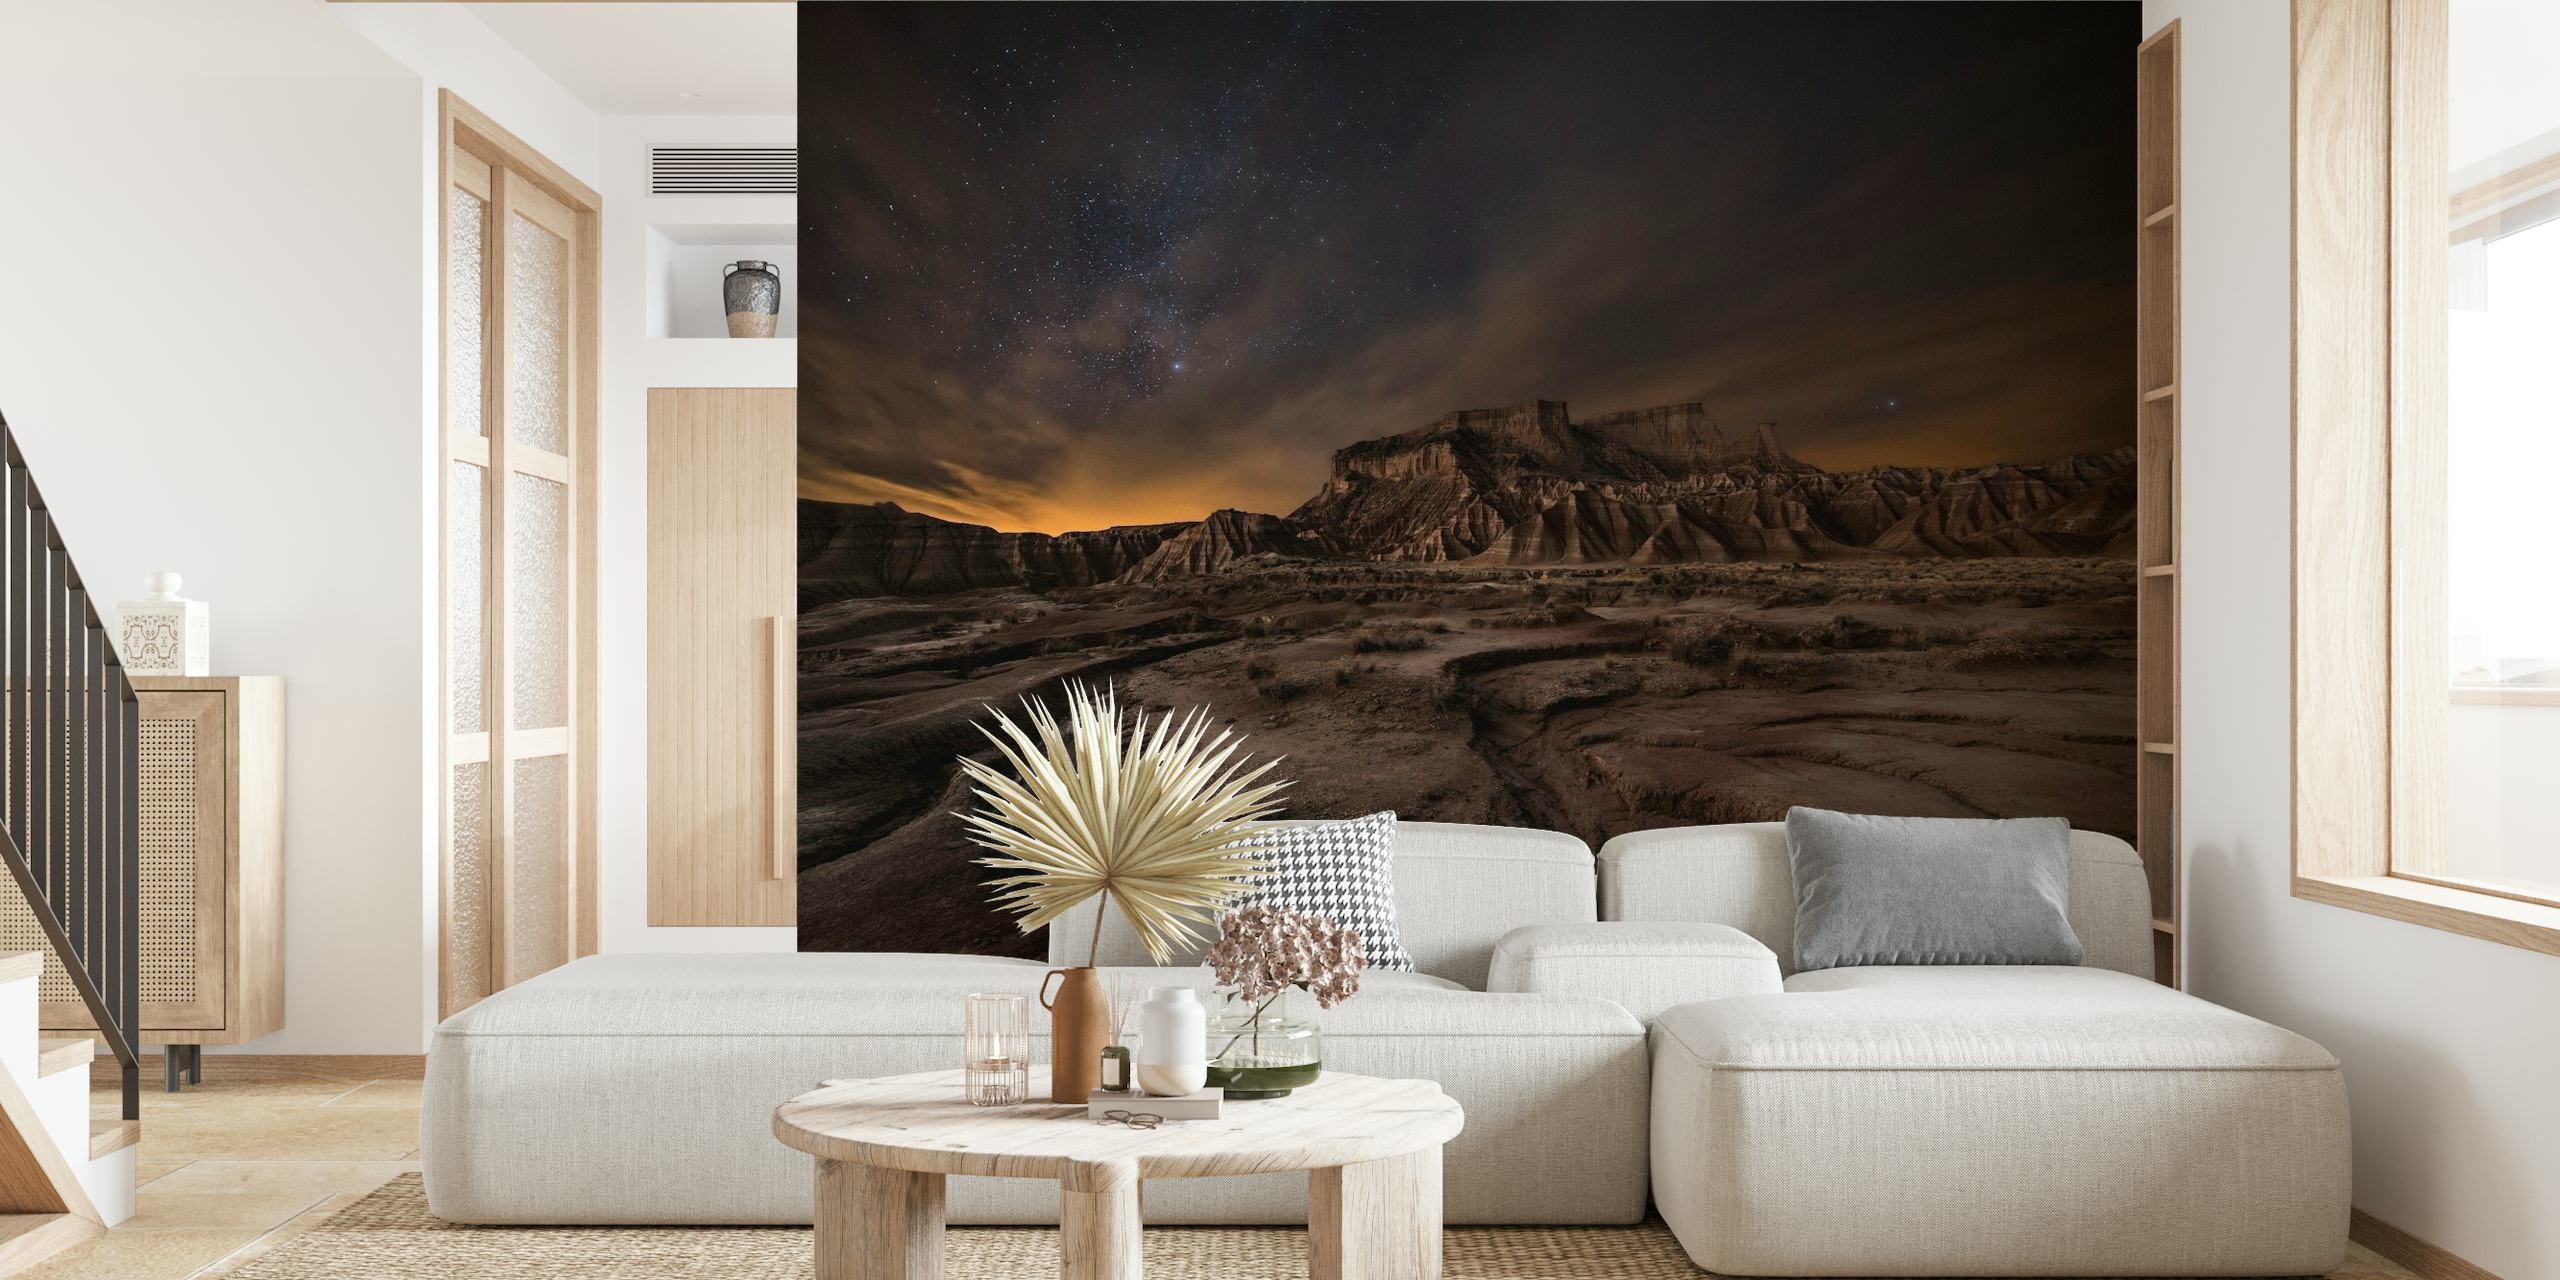 Sternenhimmel über einer Wüstenlandschaft, Wandbild mit dem Titel „Nachtwind“